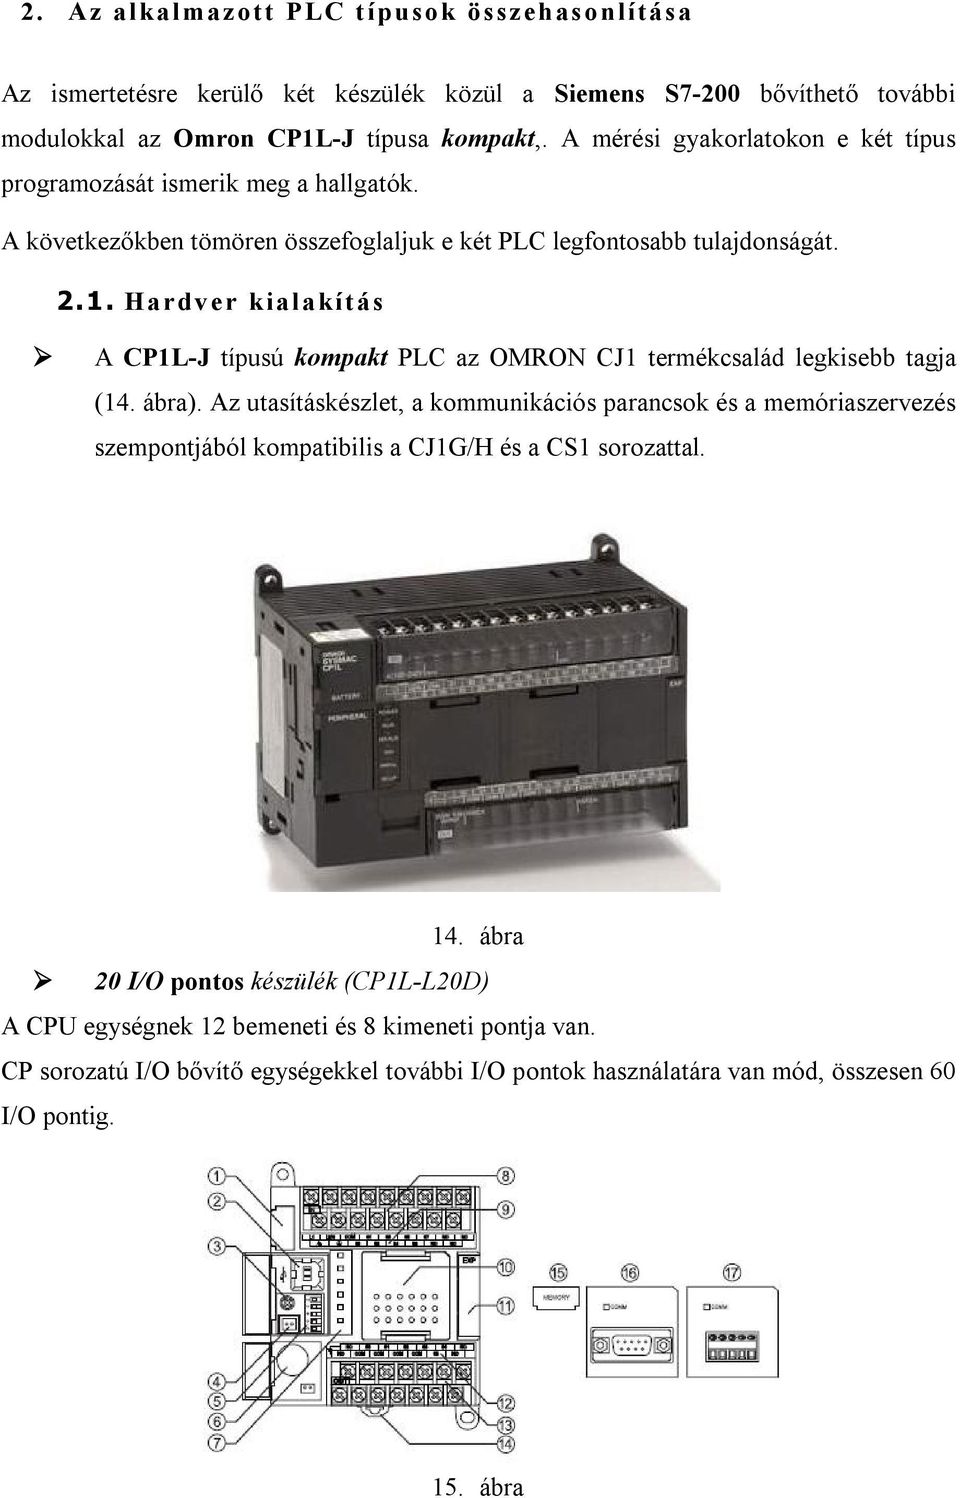 Hardver kialakítás A CP1L-J típusú kompakt PLC az OMRON CJ1 termékcsalád legkisebb tagja (14. ábra).